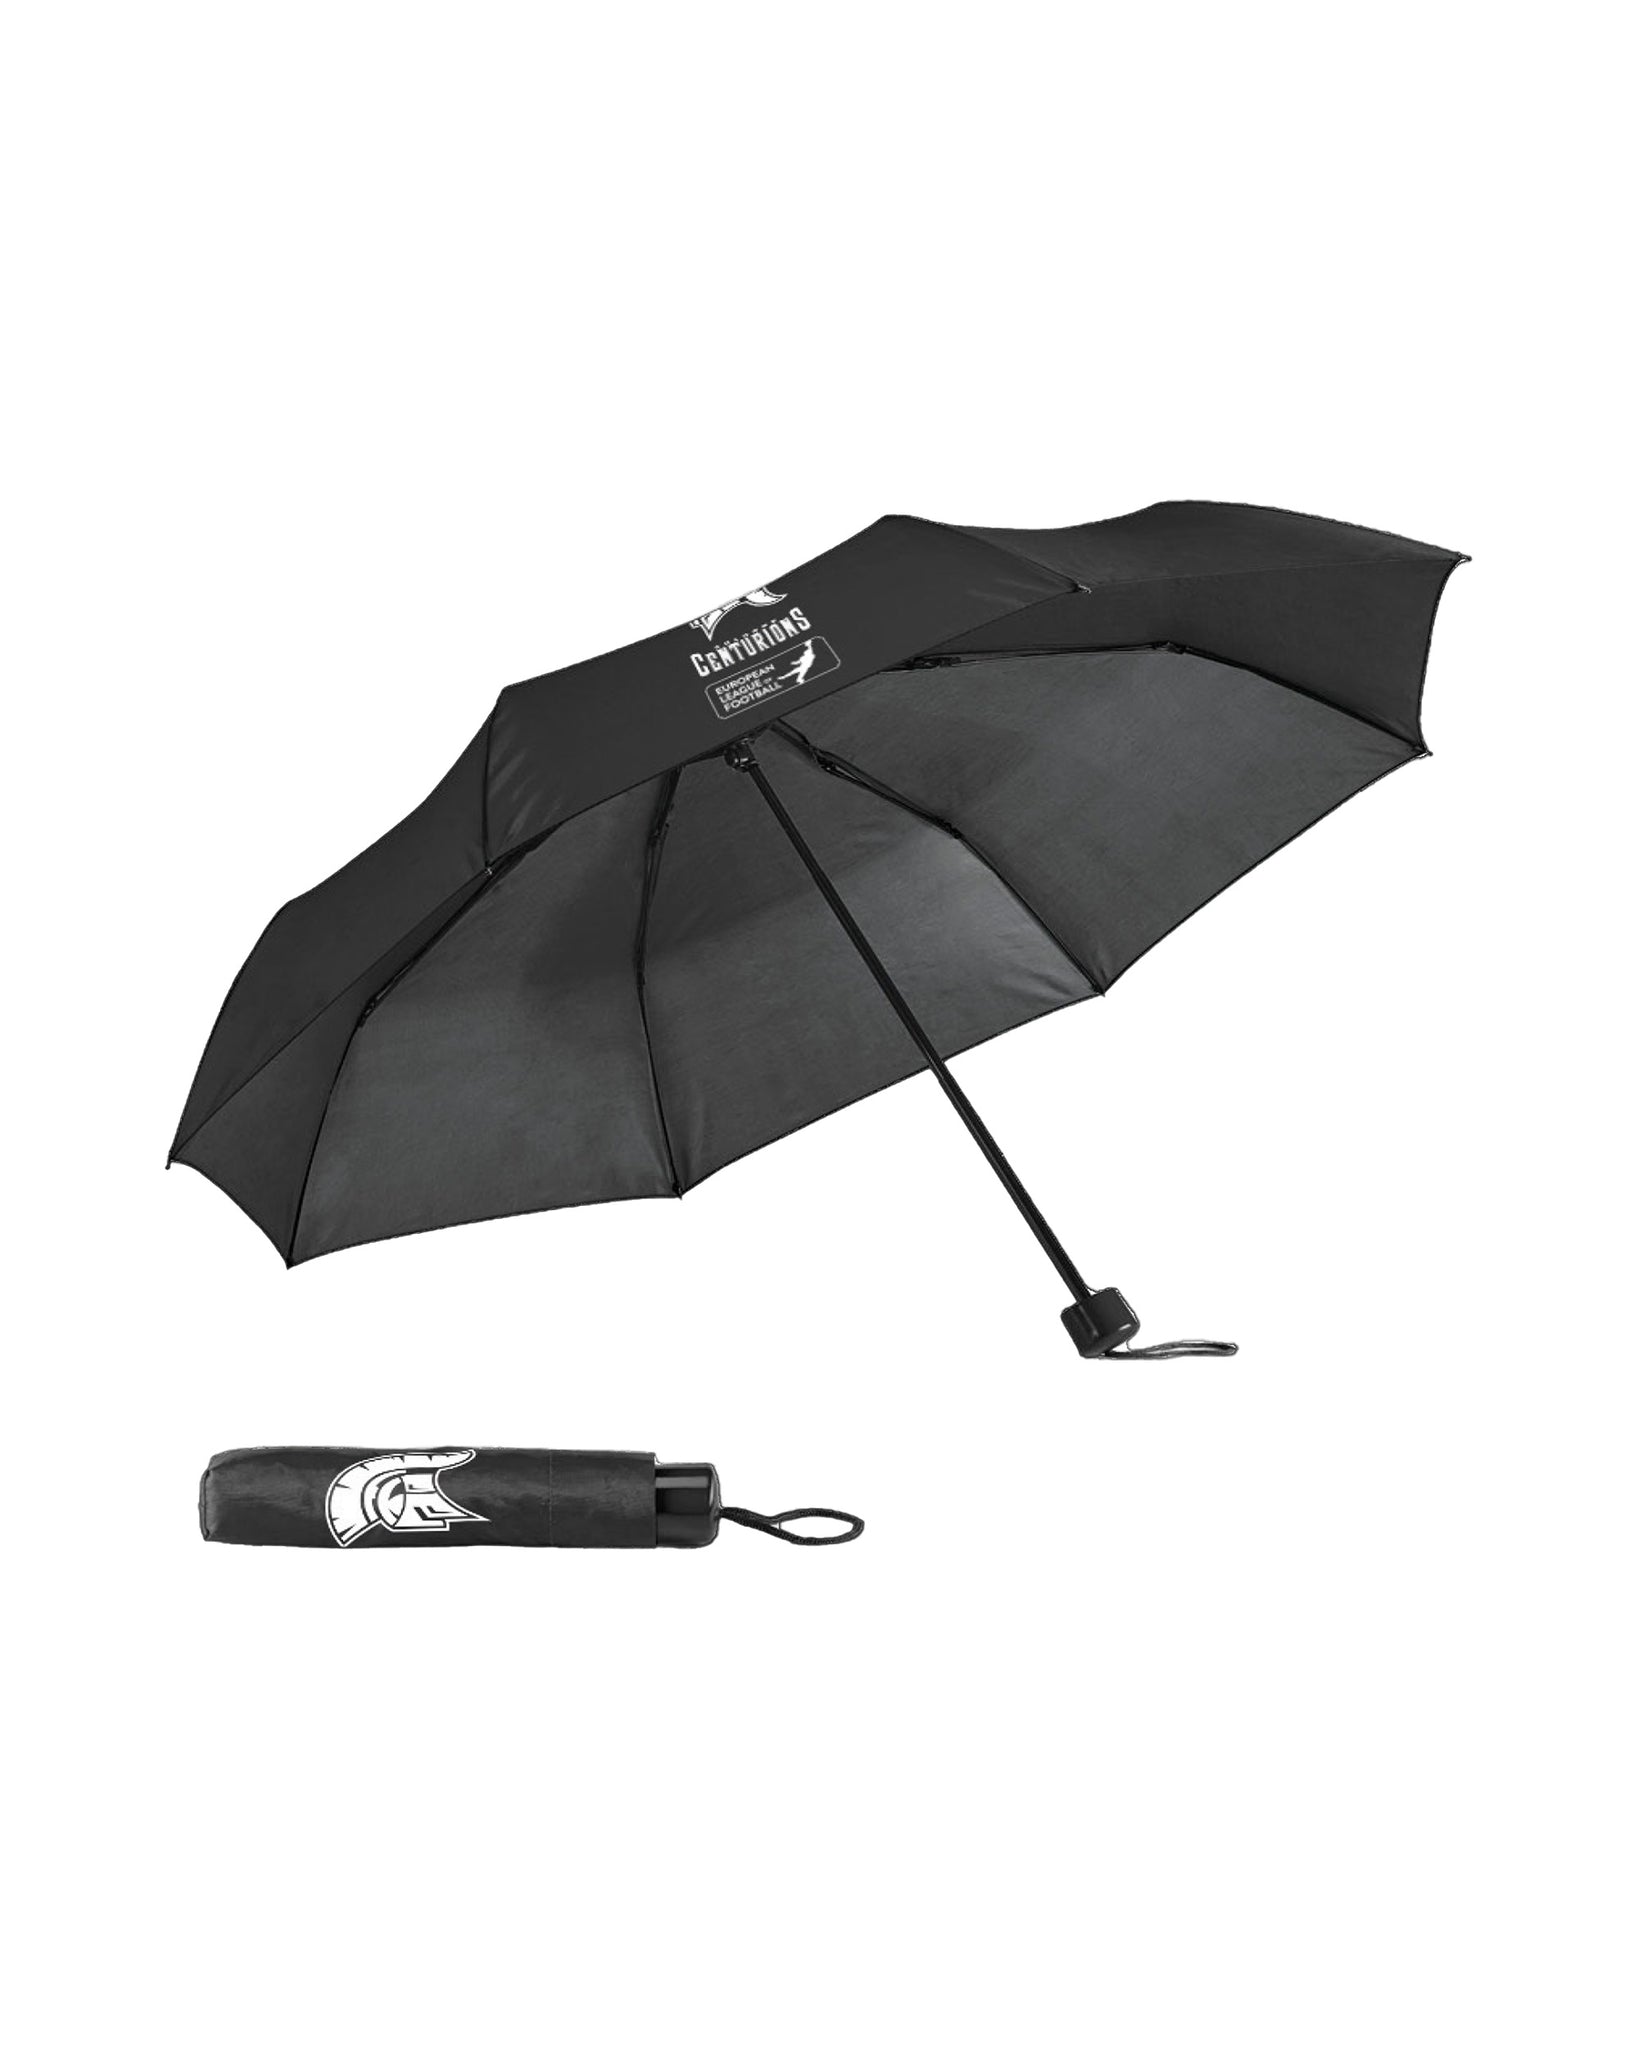 Cologne Centurions Umbrella